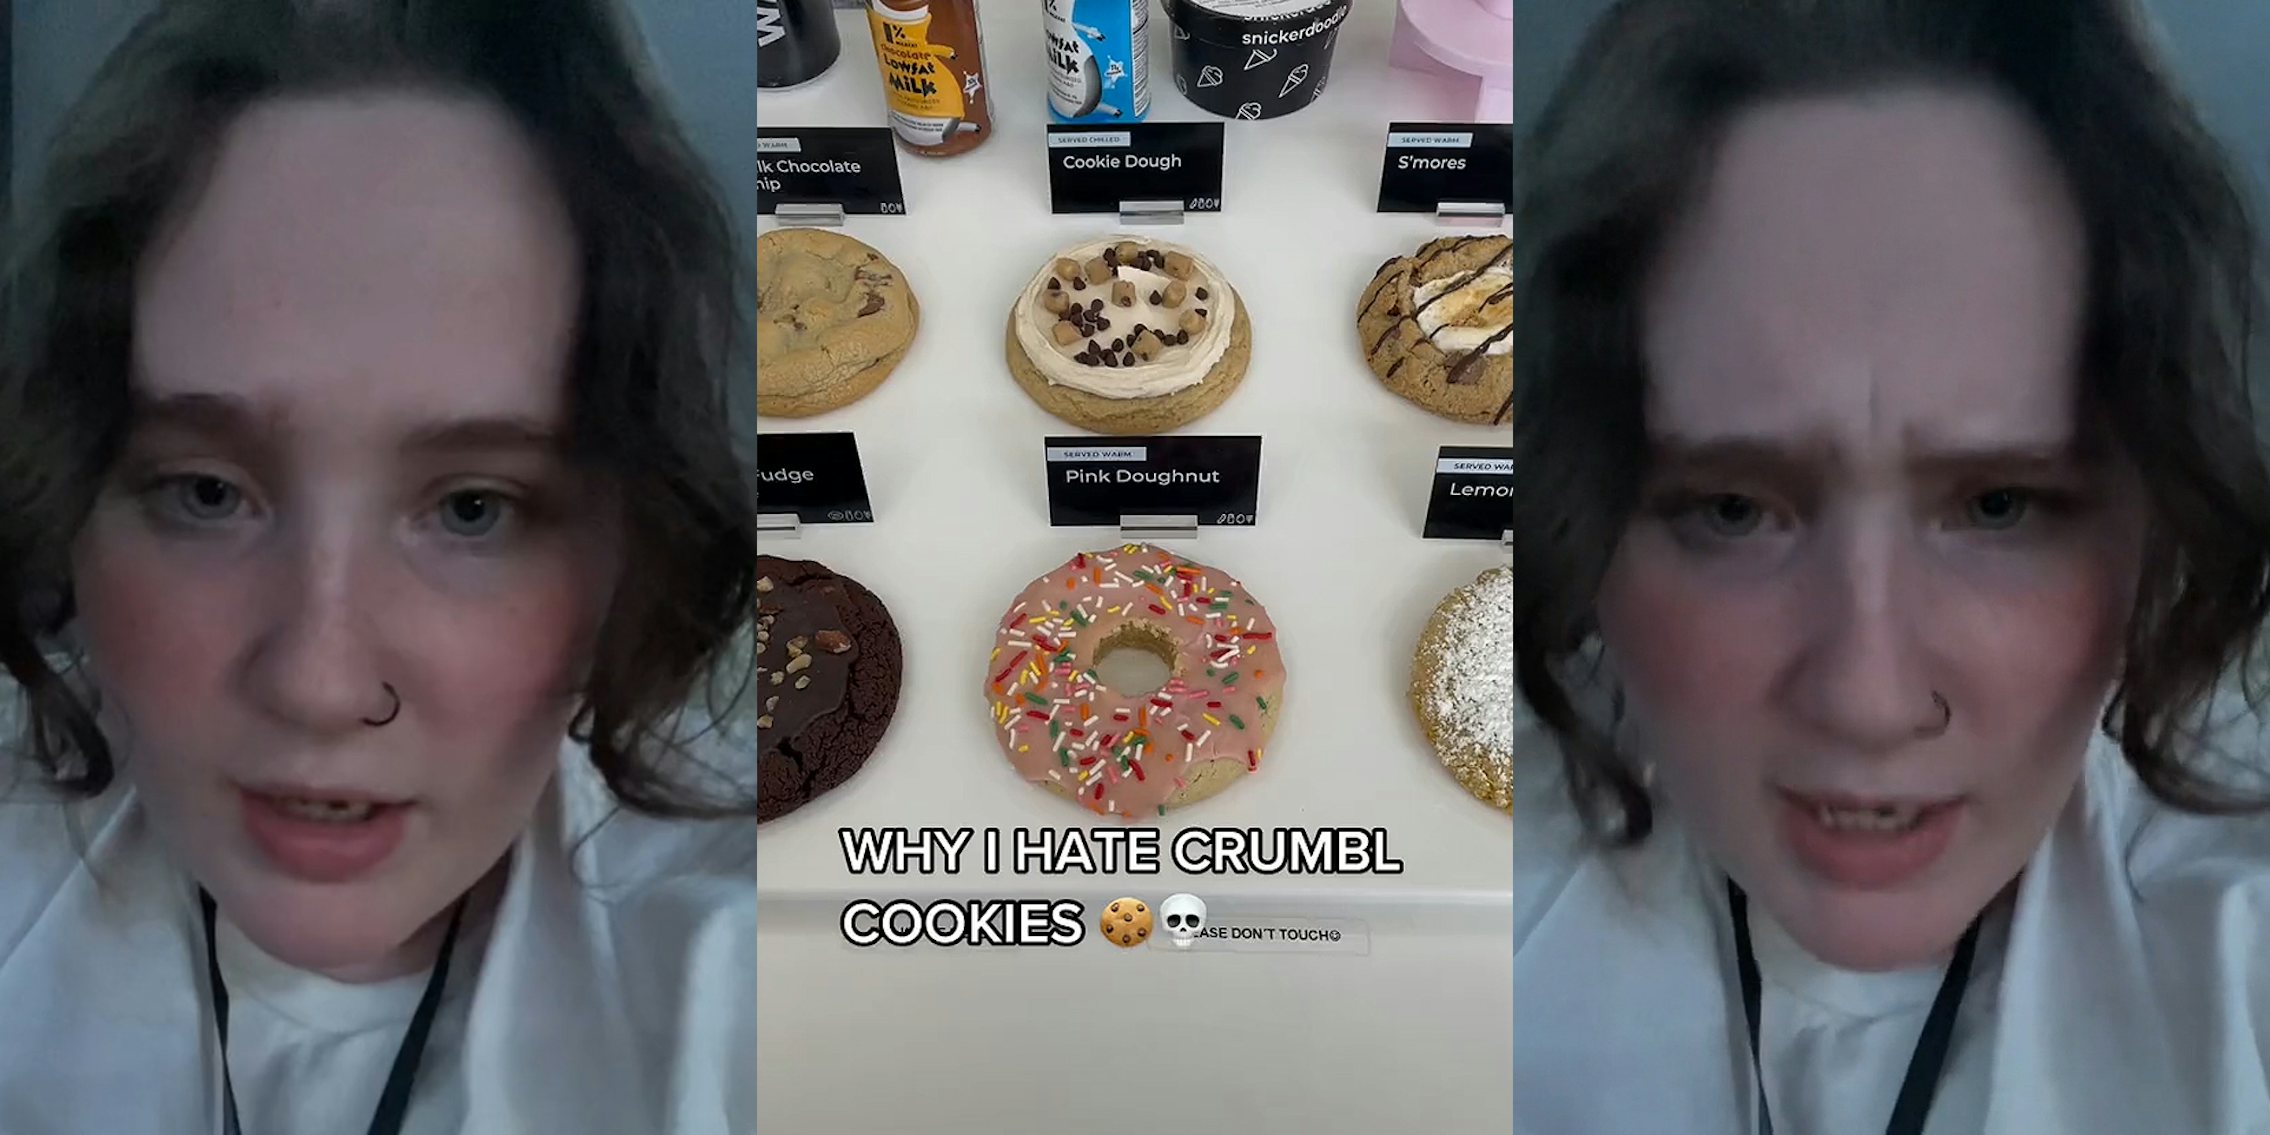 woman speaking (l) Crumbl Cookies cookies on display caption 'WHY I HATE CRUMBL COOKIES' (c) woman speaking (r)